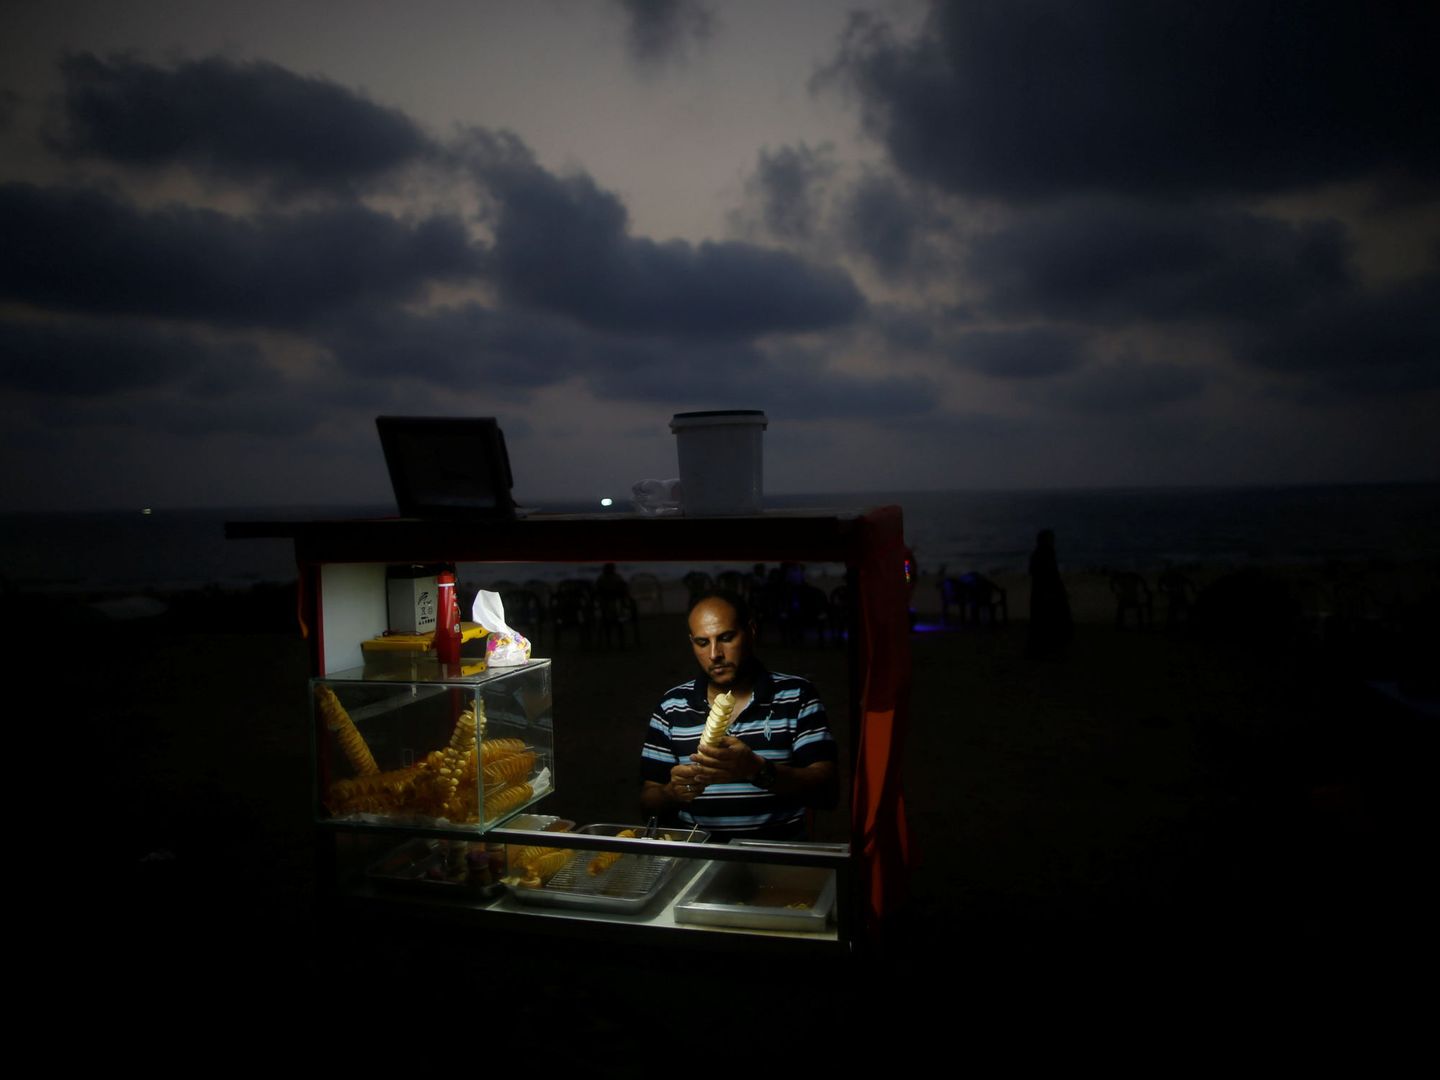 Un palestino vende sándwiches durante un corte de luz en Gaza, el 12 de julio de 2017. (Reuters)